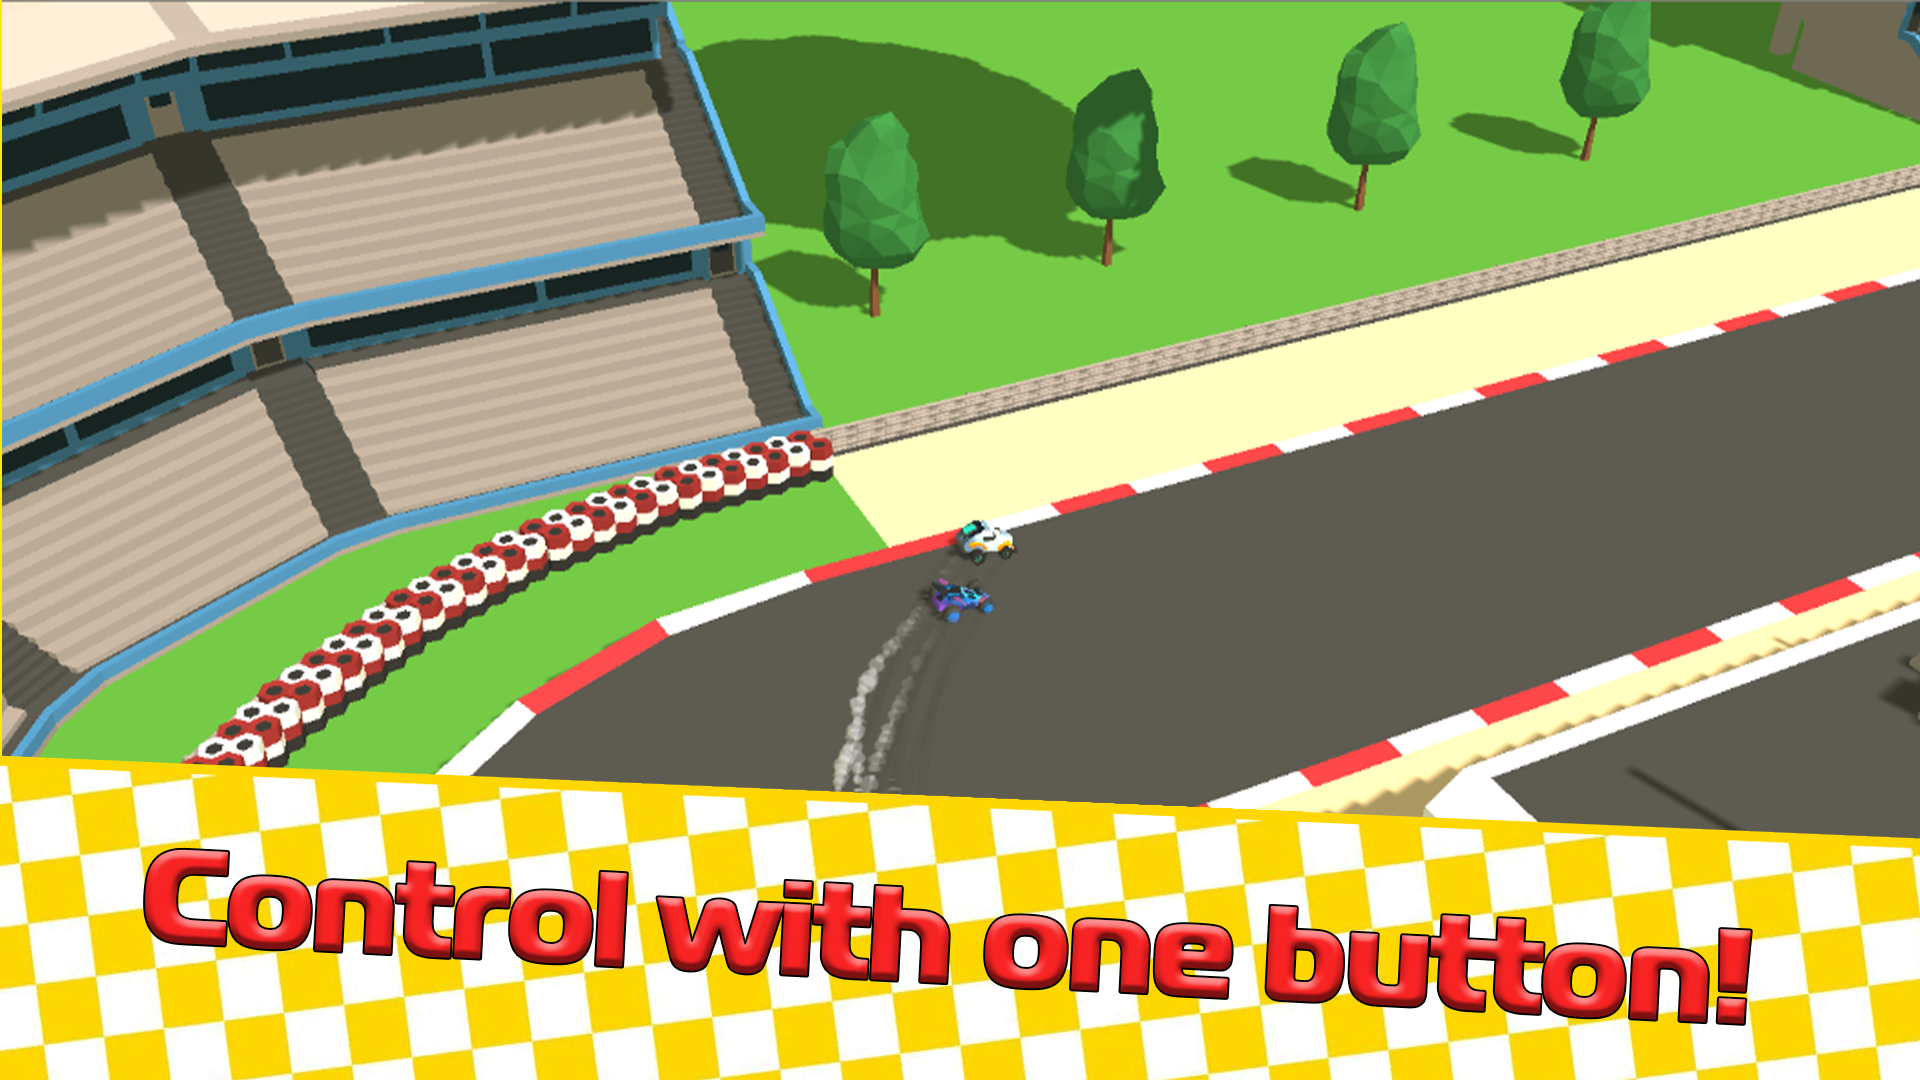 Funny Racing 2 Players no Jogos 360